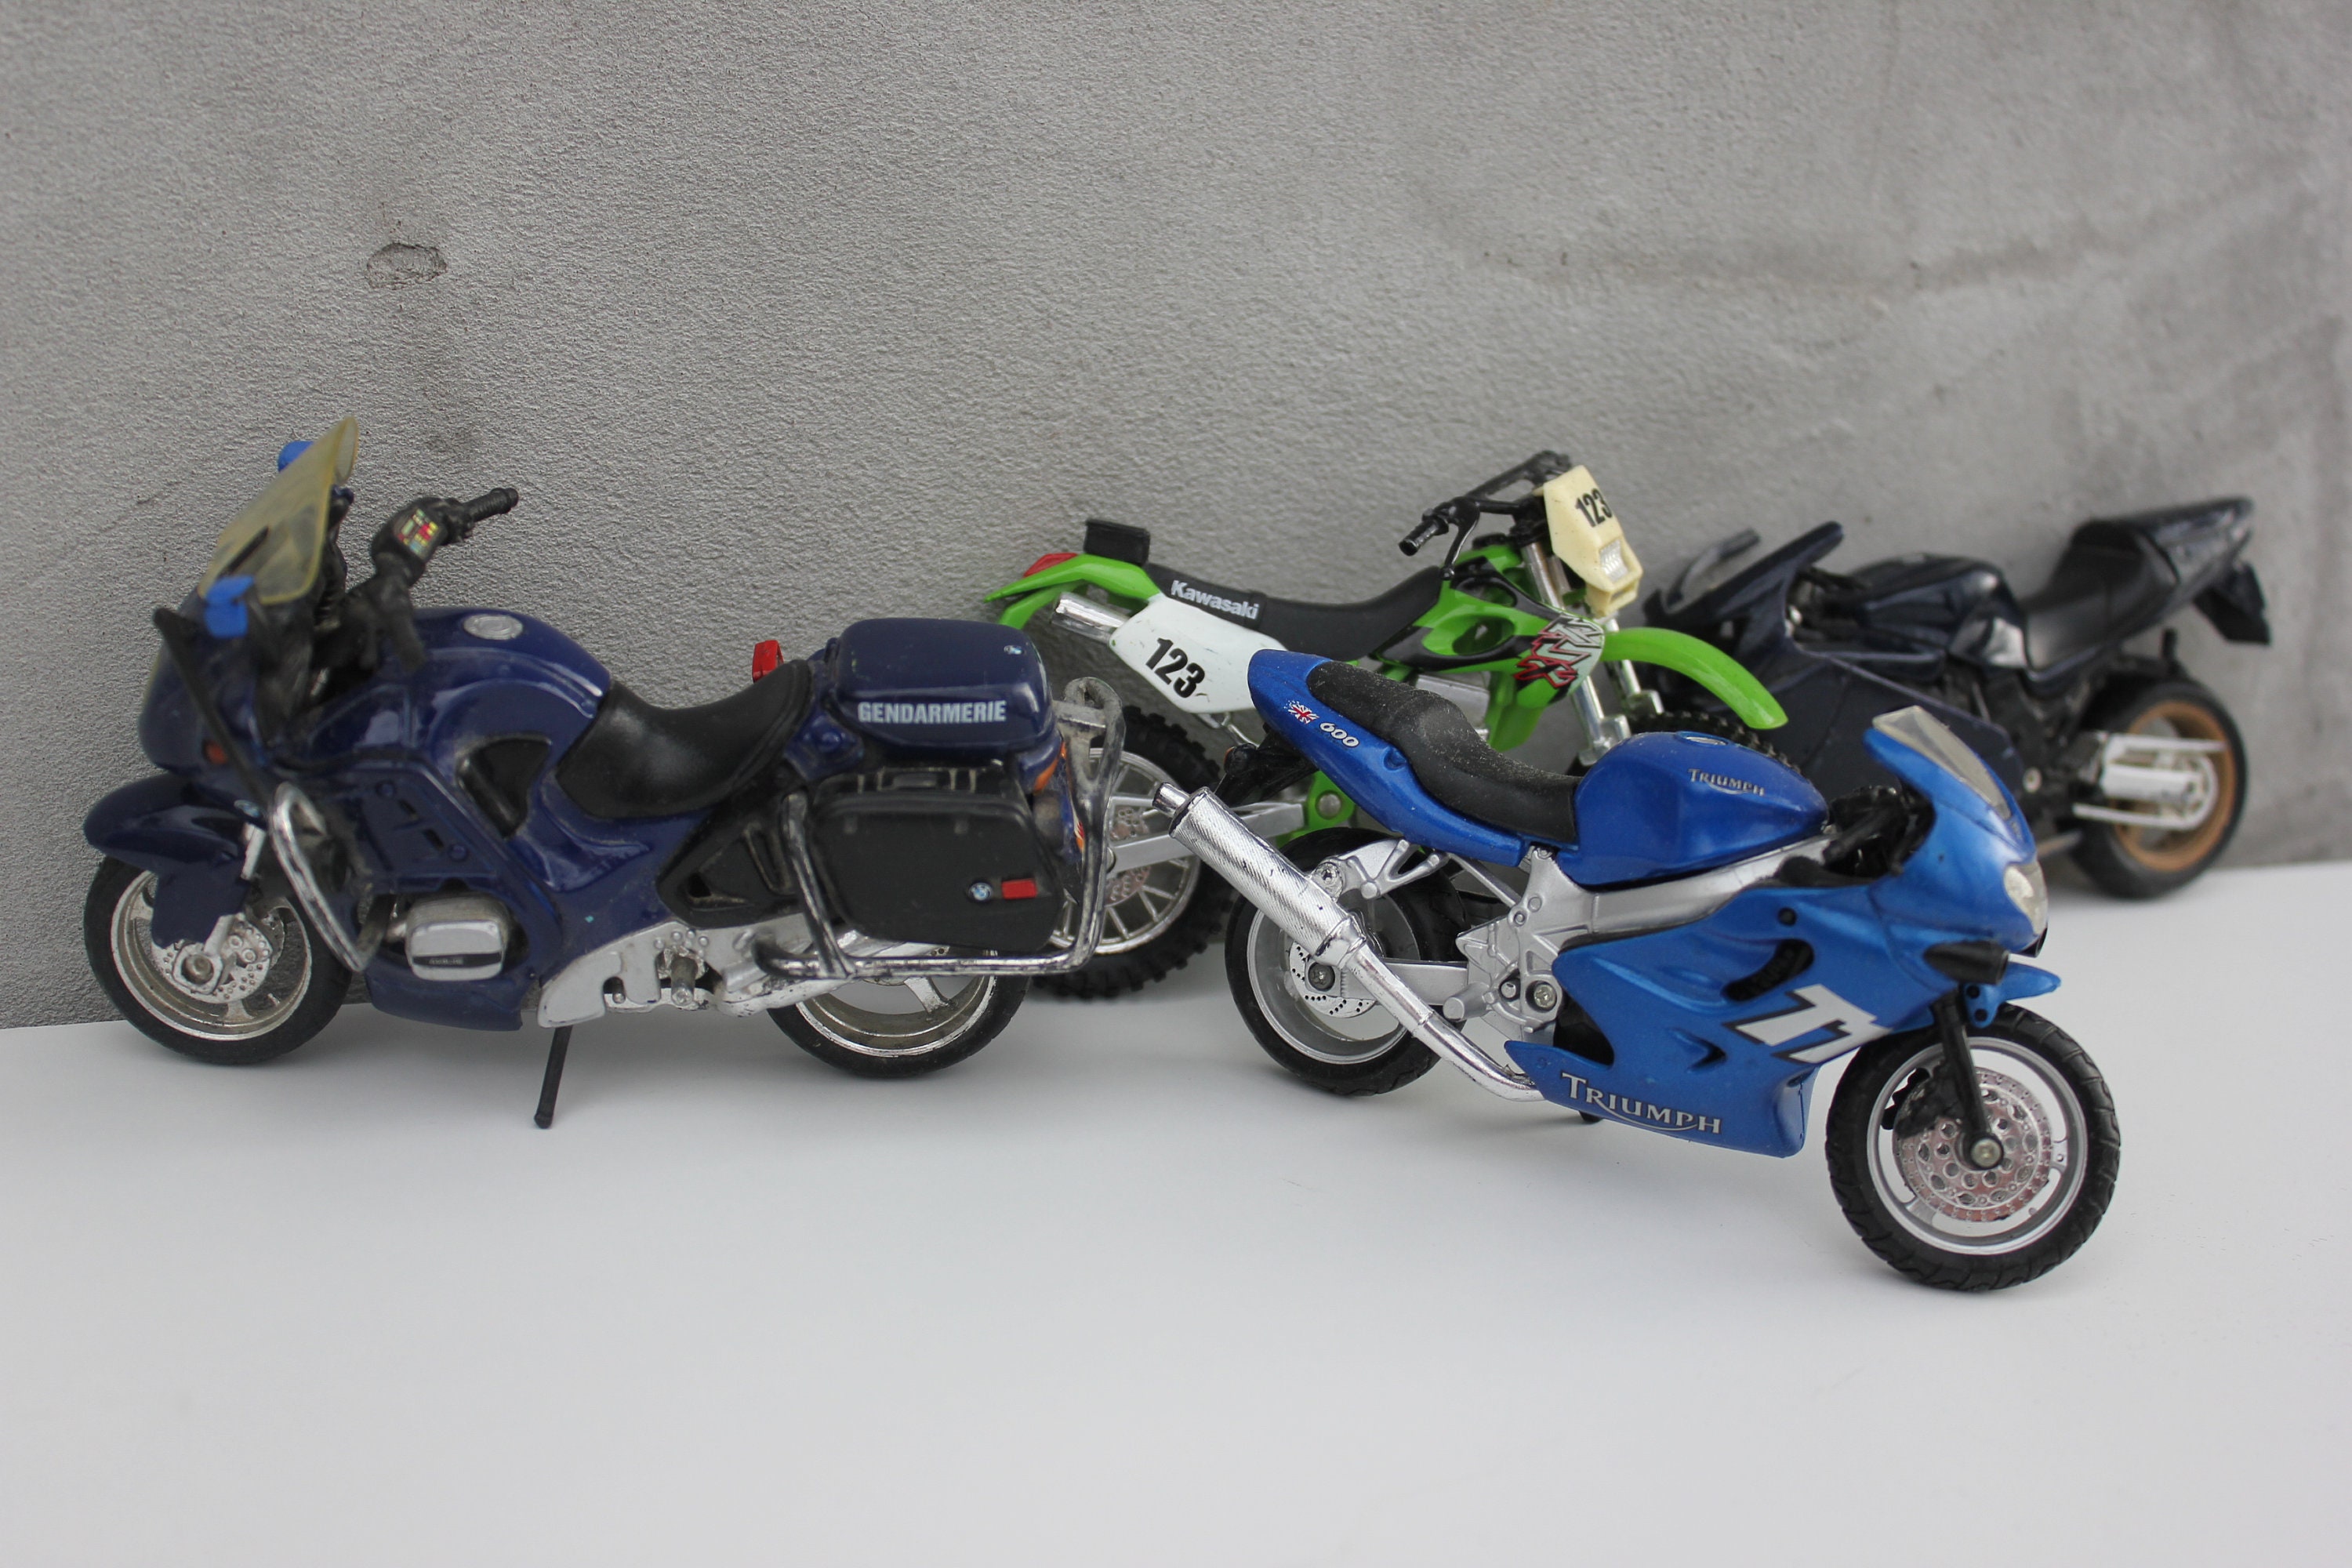 Collectible Toy Maisto Bikes Kawasaki, BMW Gendarmerie, Triumph 600,  Detailed Motorcycles 